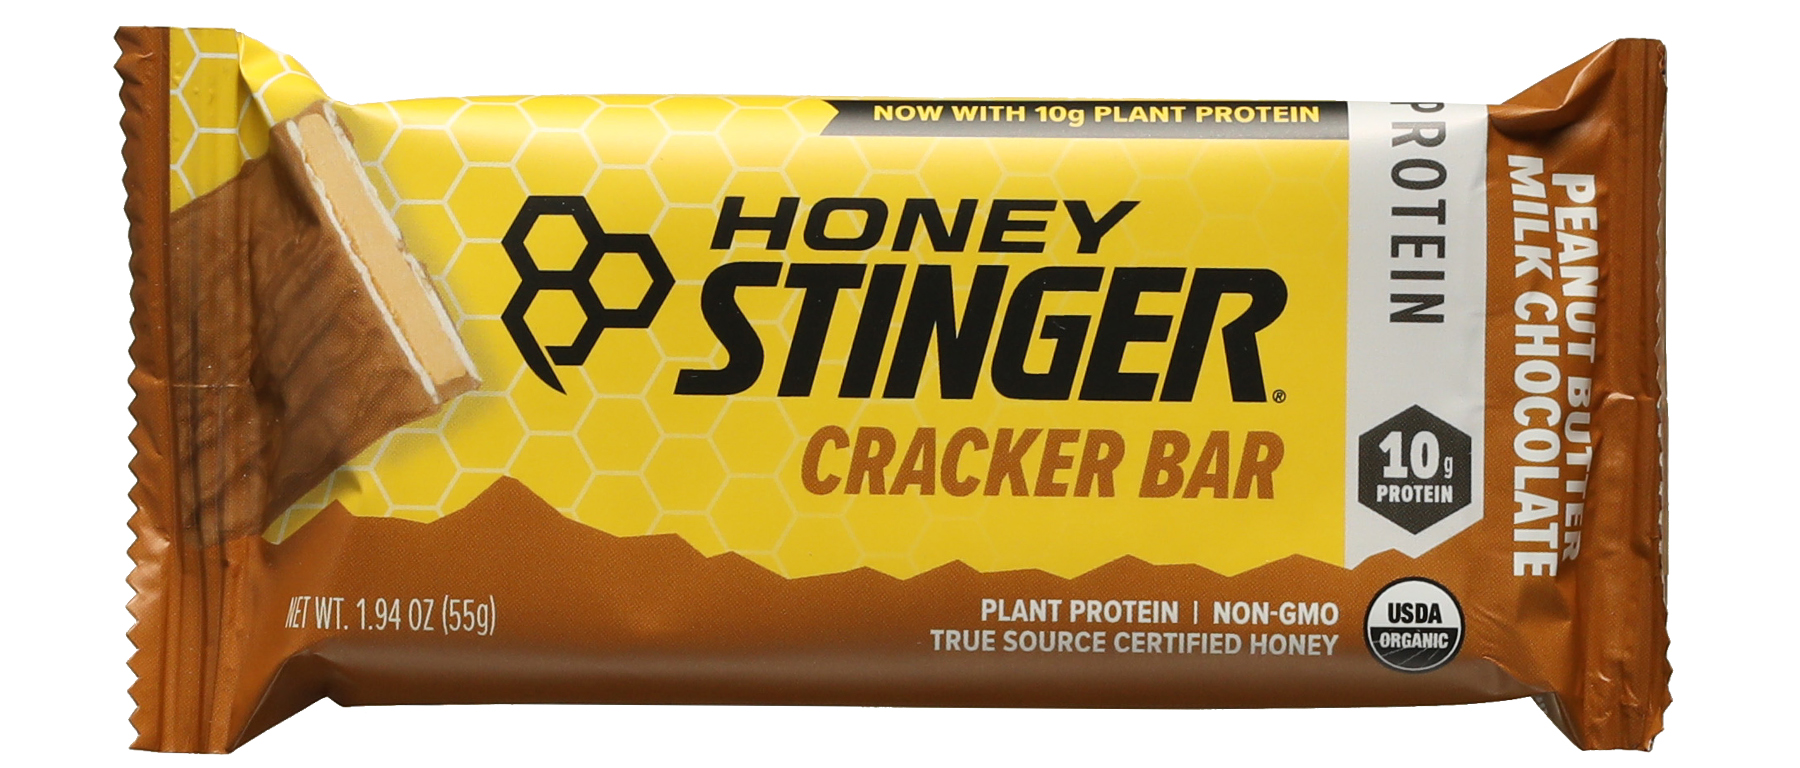 Honey Stinger Cracker Bar